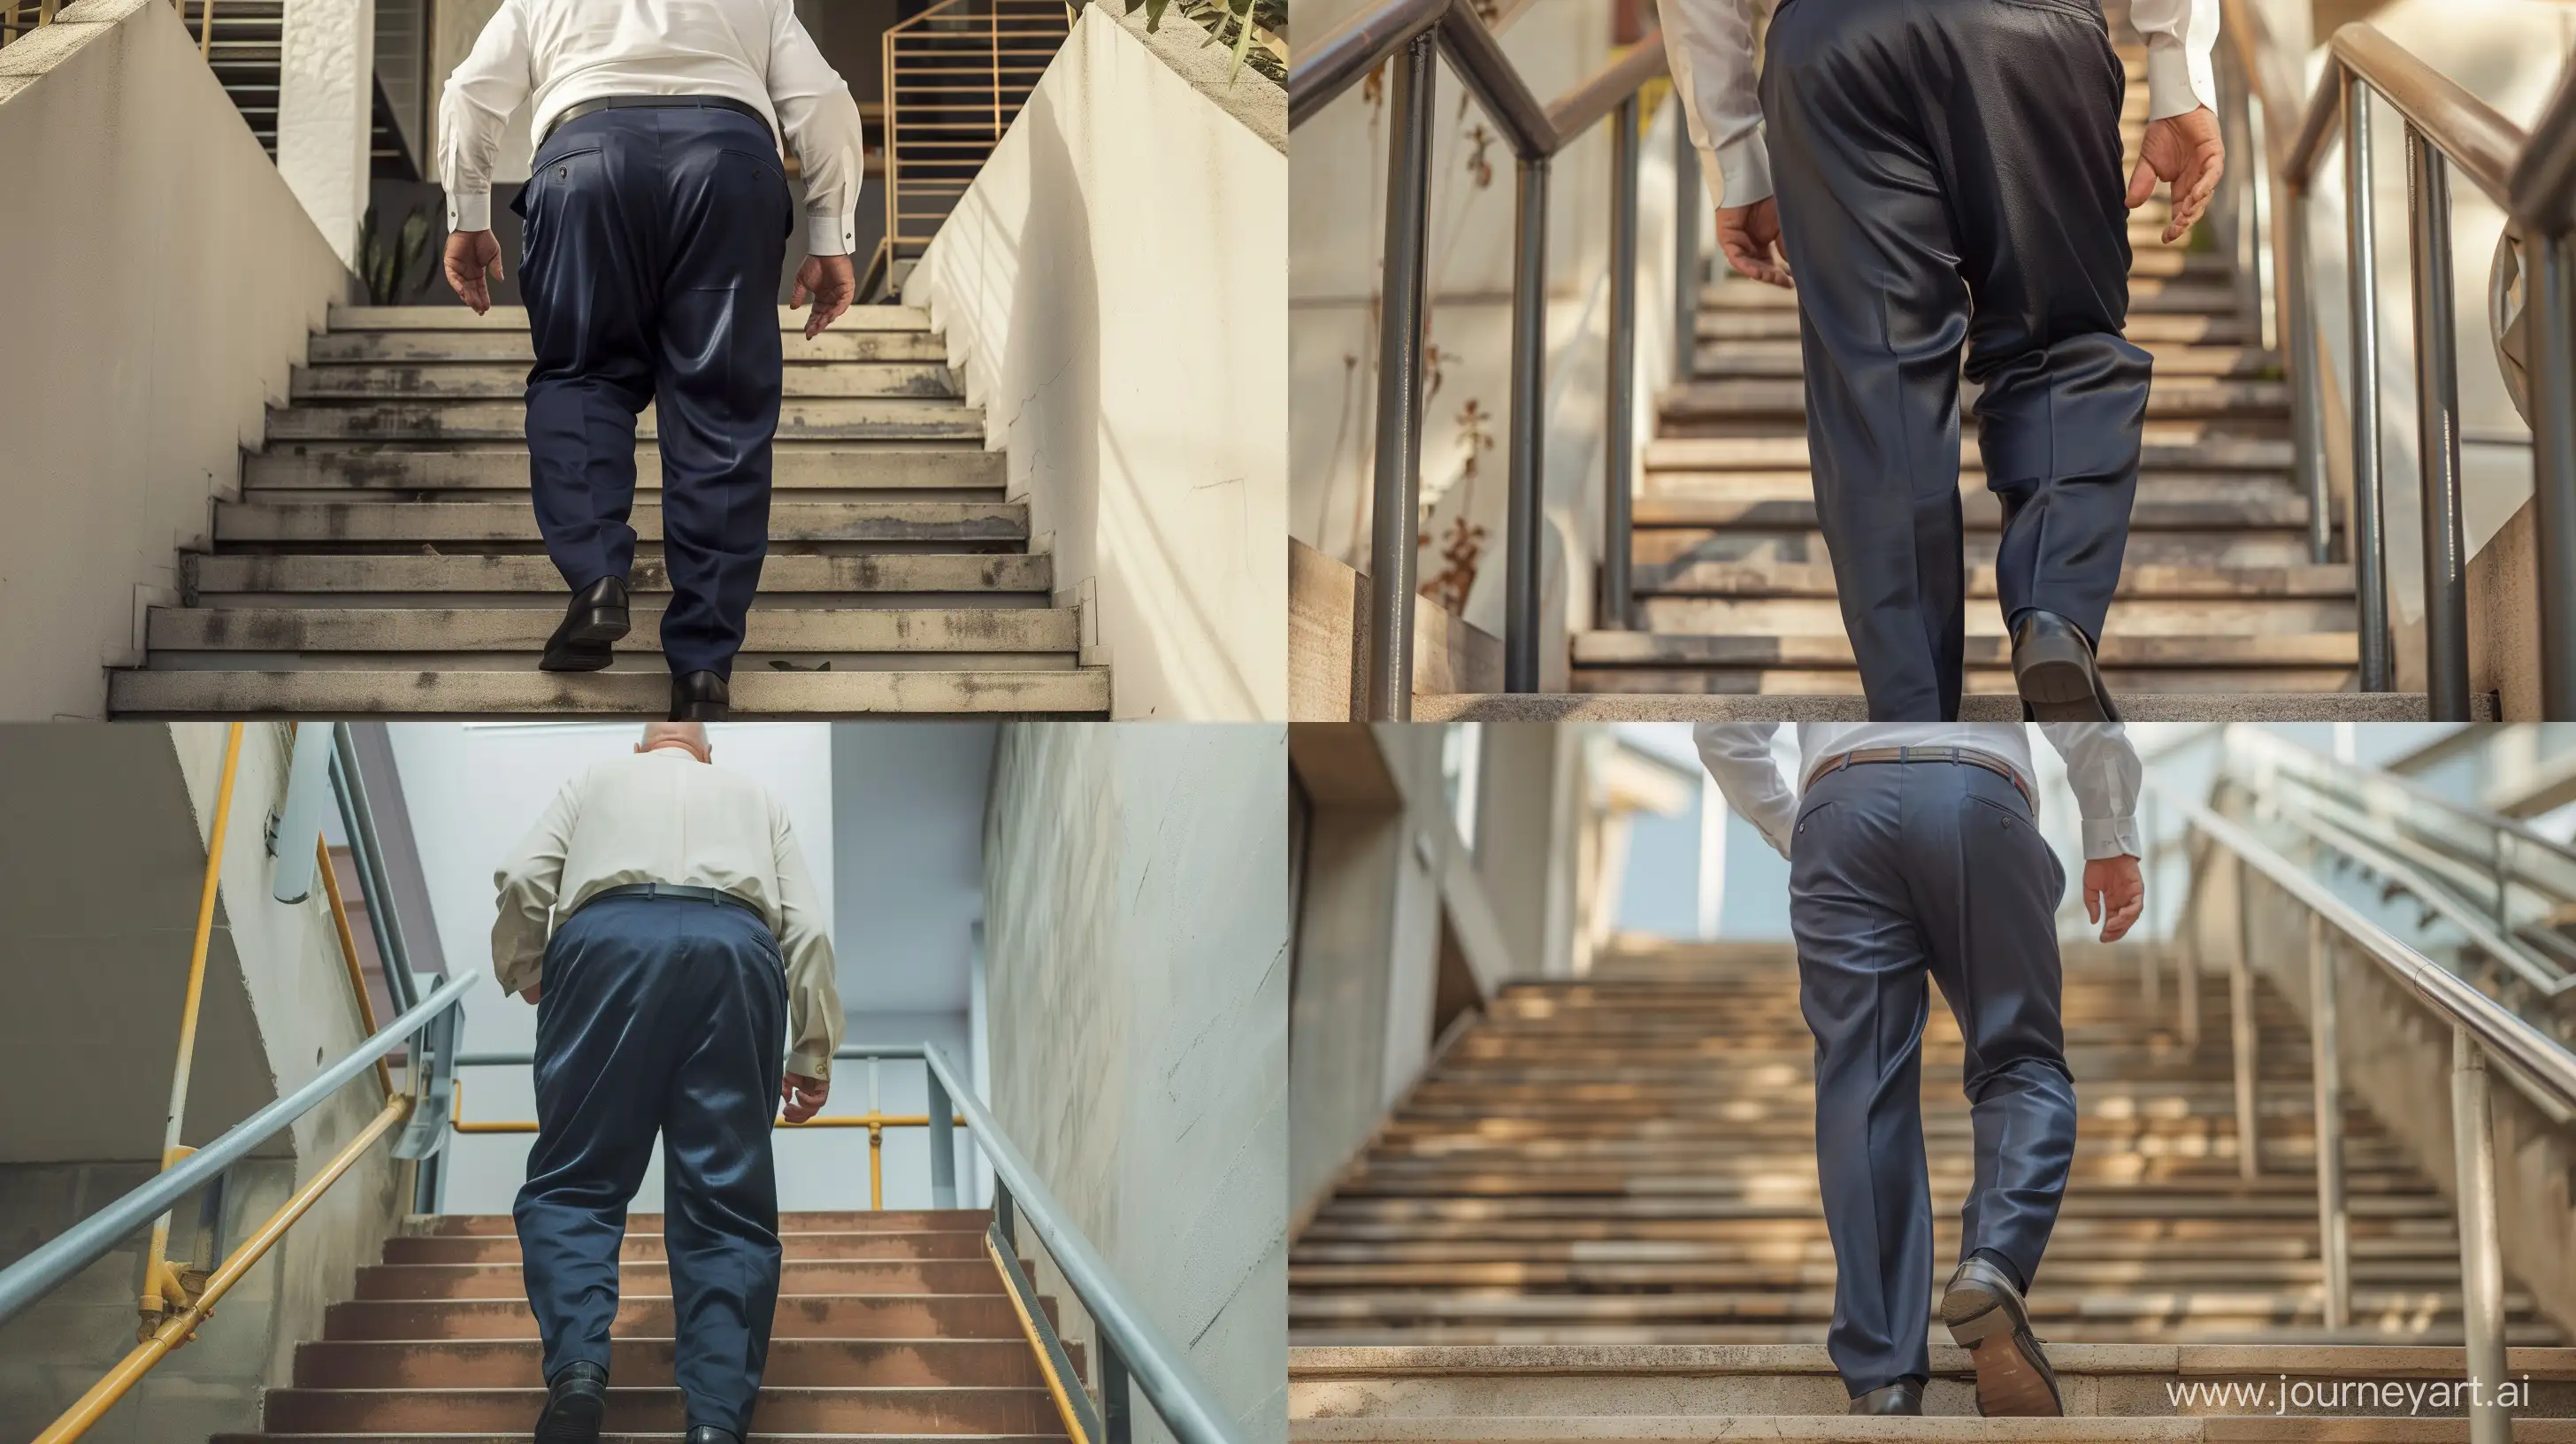 Elderly-Businessman-Climbing-Stairs-in-Stylish-Attire